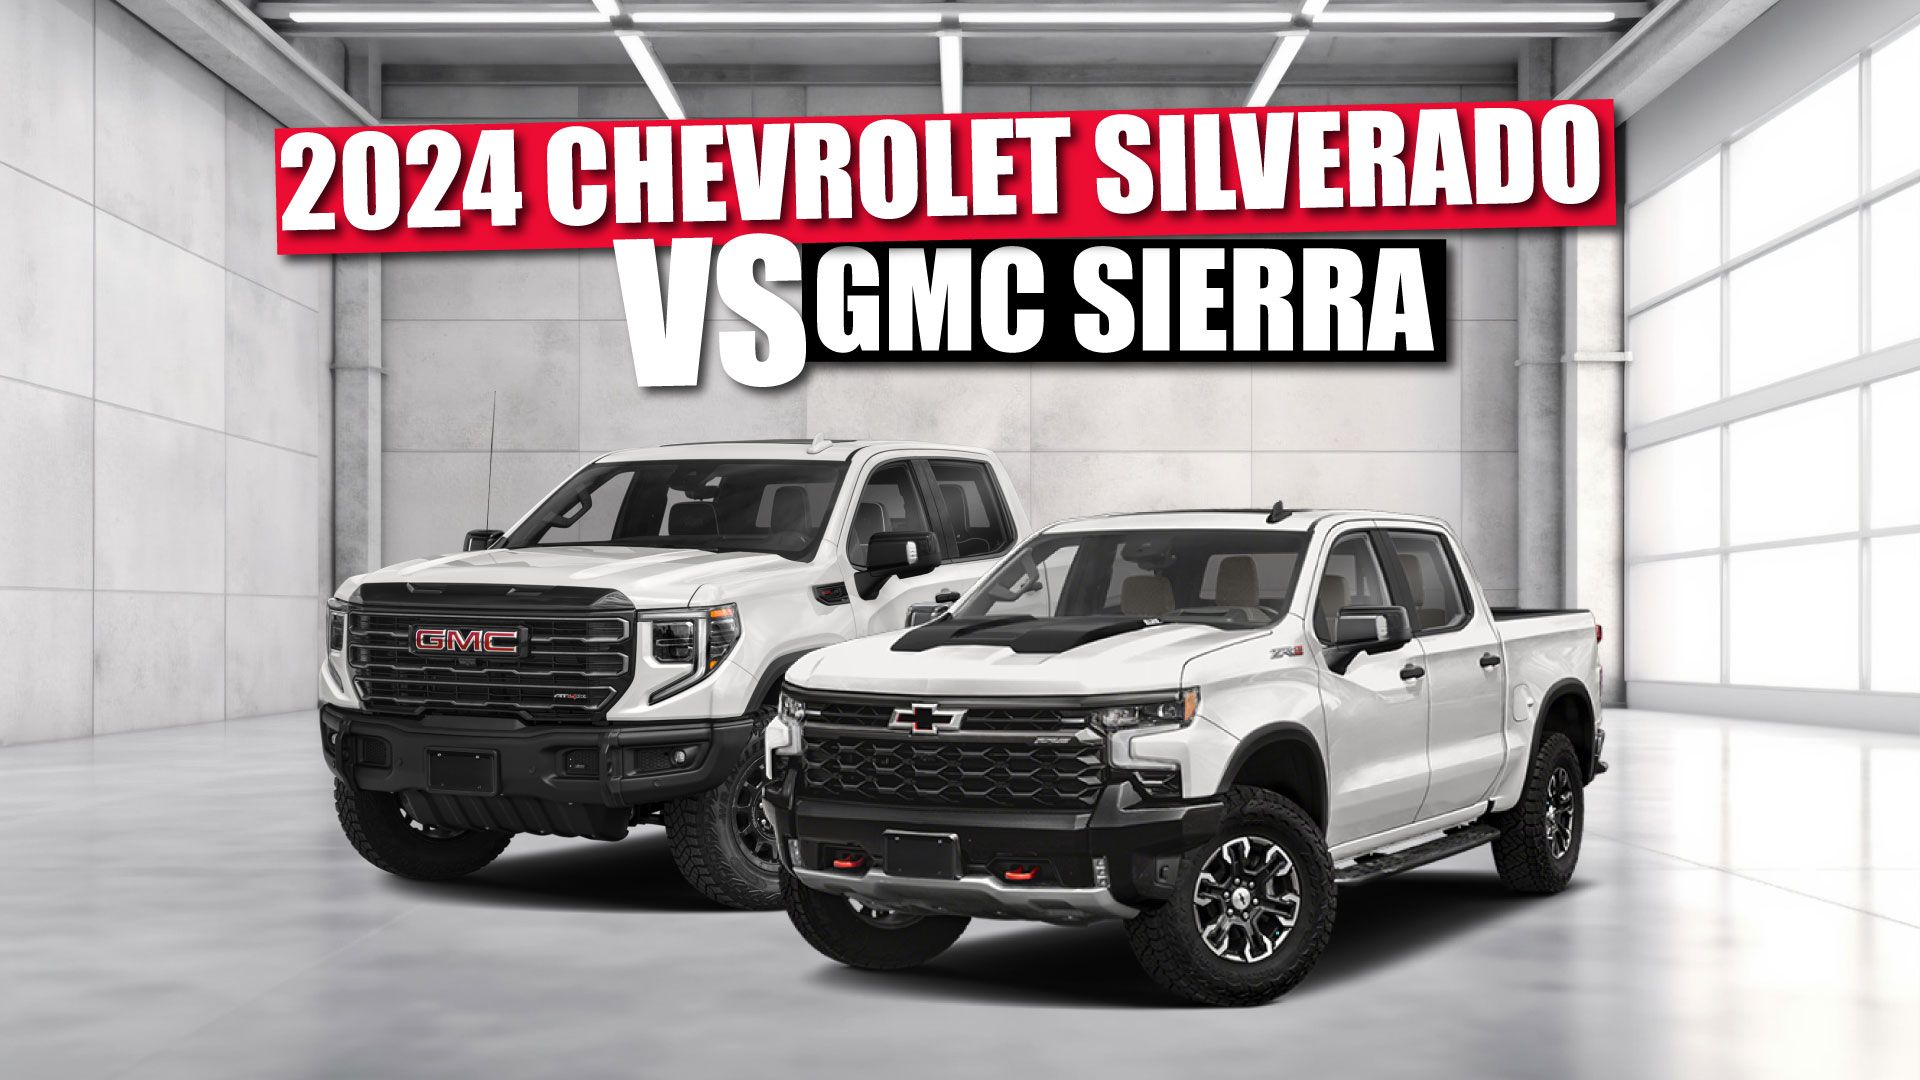 2024 Chevrolet Silverado vs GMC Sierra